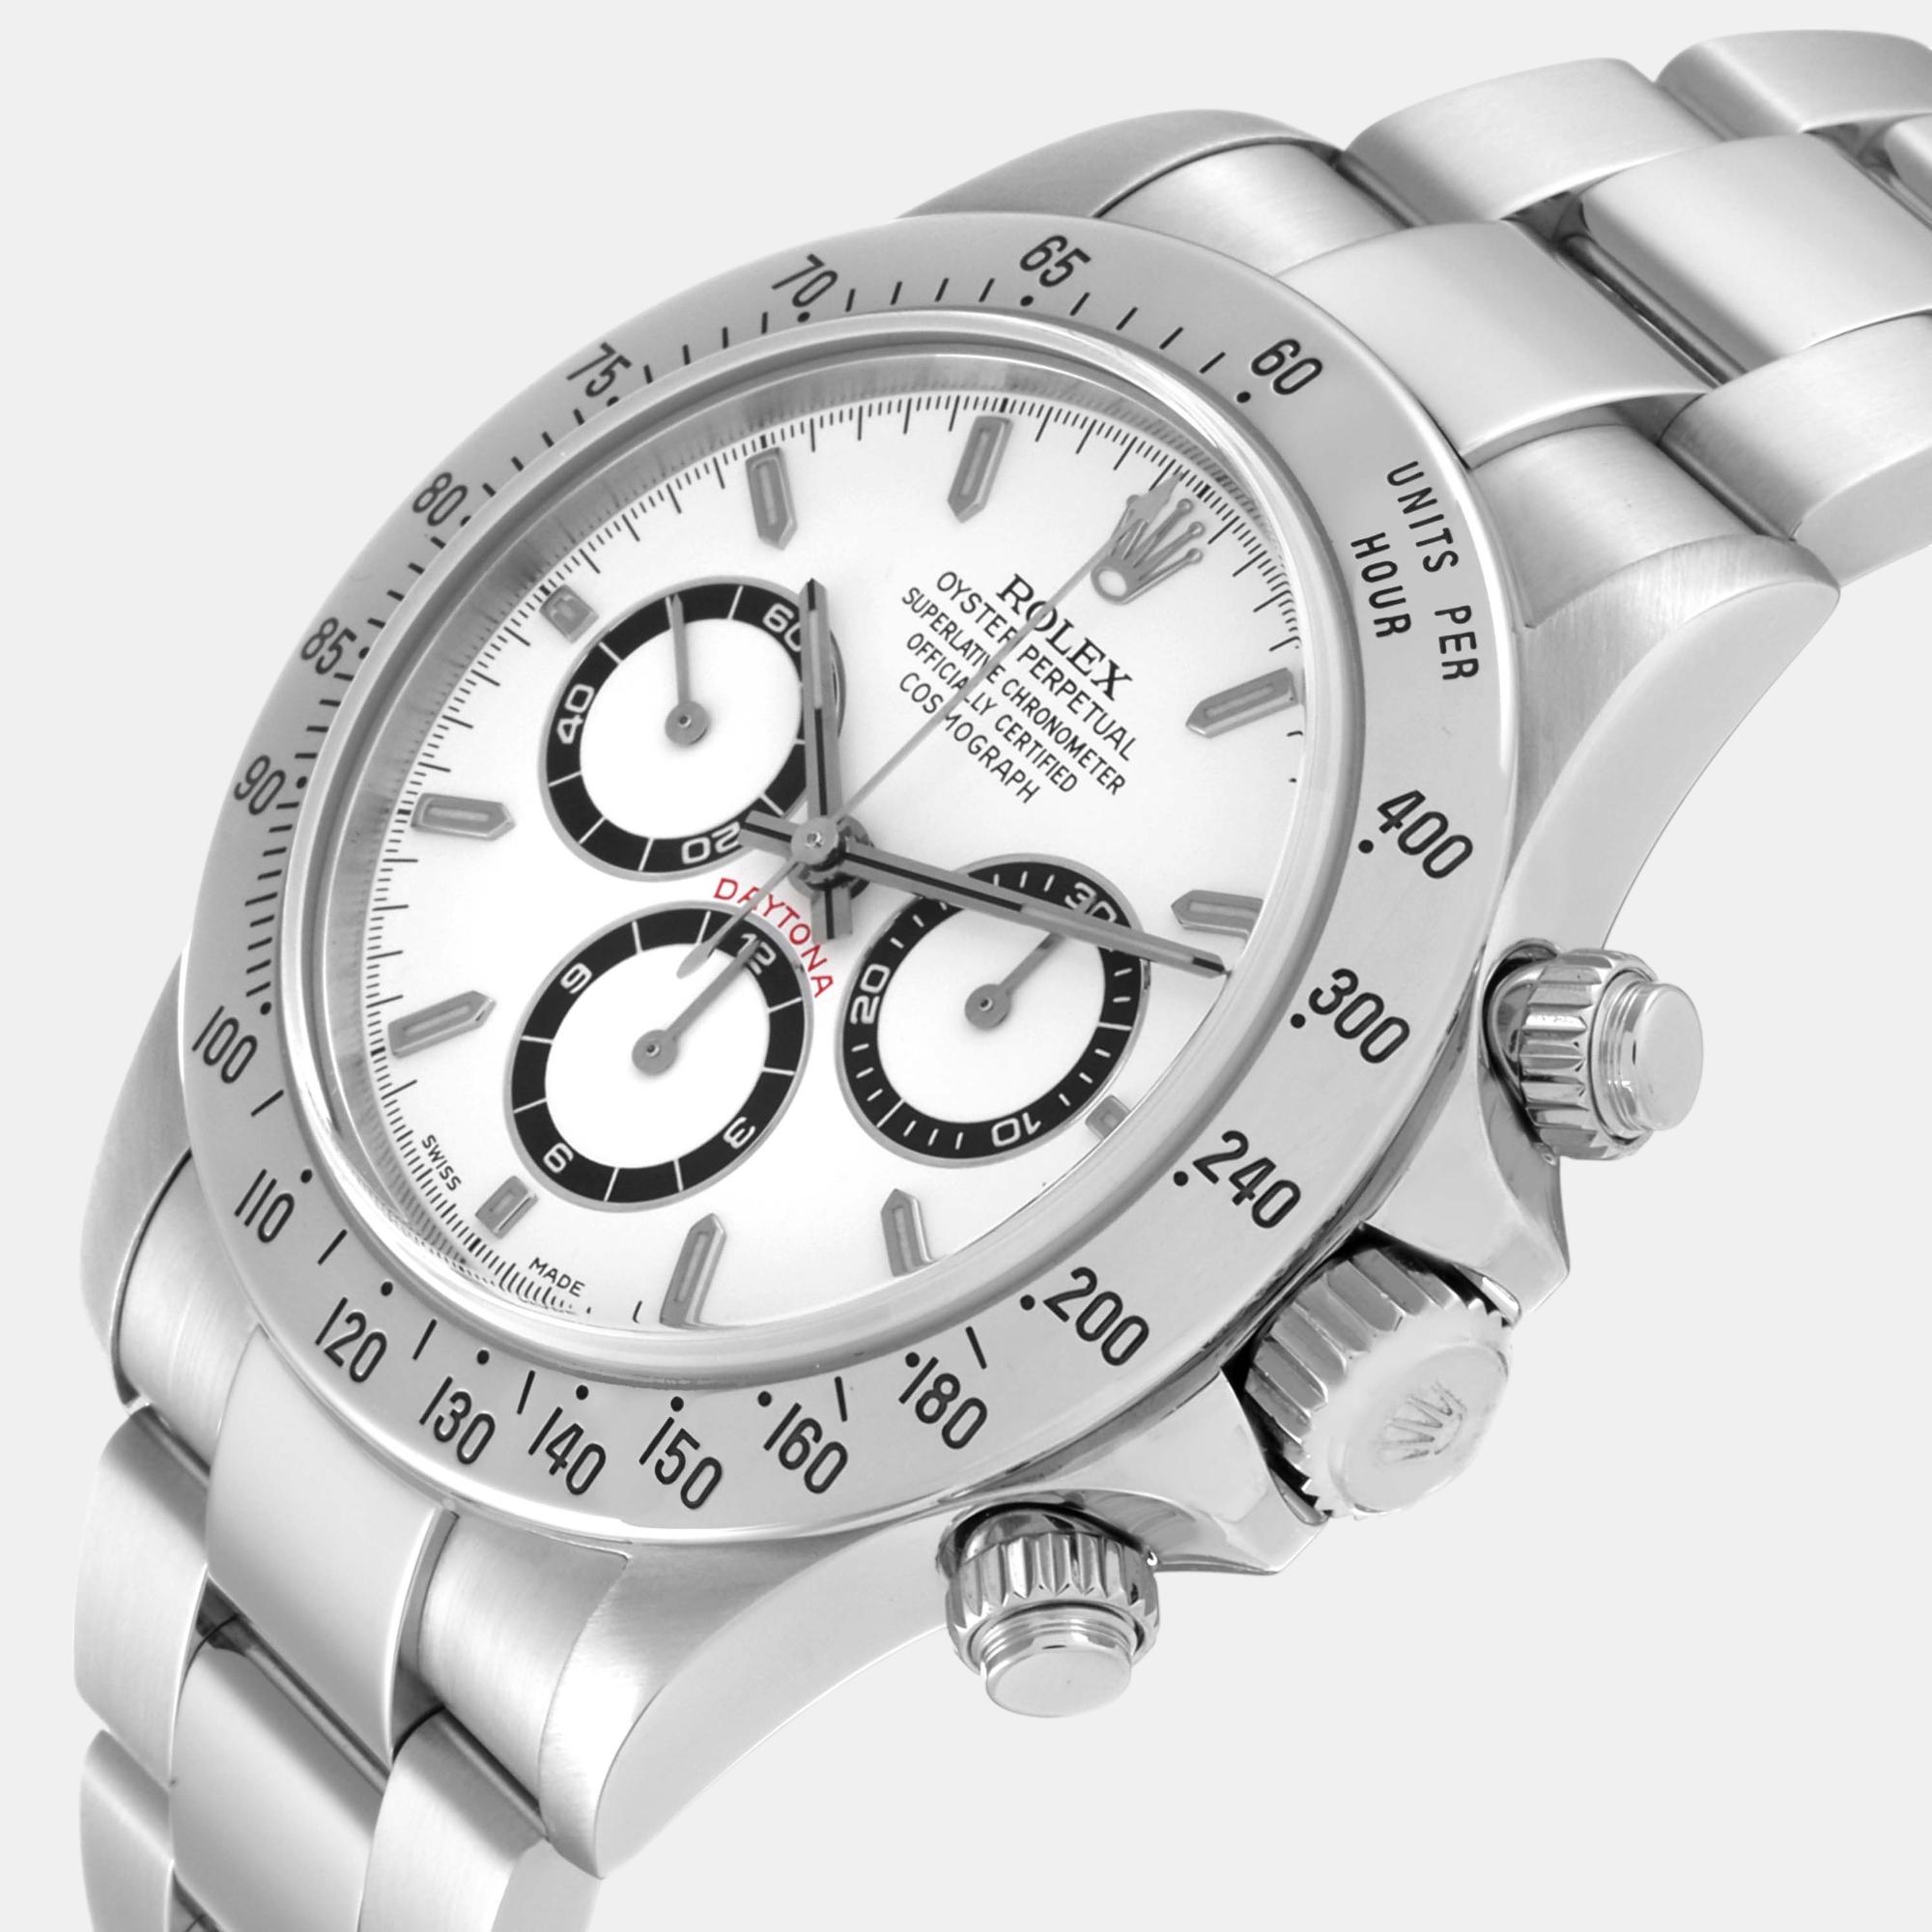 

Rolex Daytona Zenith Movement Steel Mens Watch 16520, White